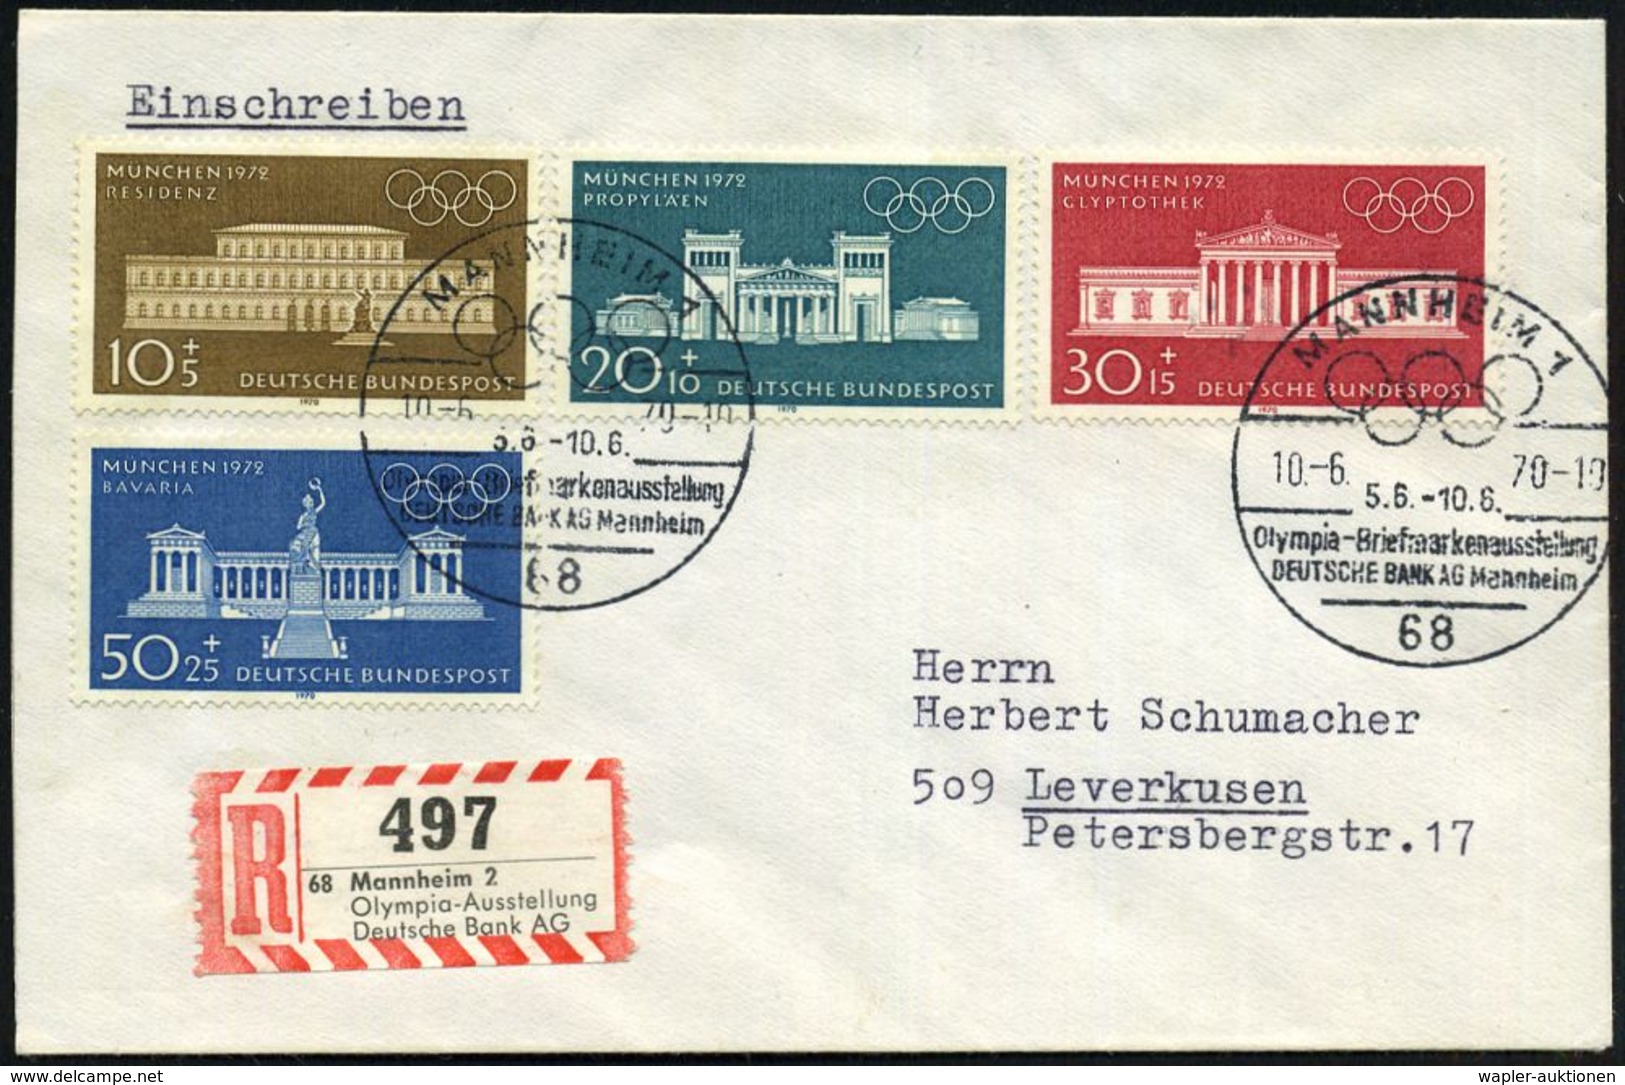 68 MANNHEIM 1/ Olympia-Briefm.Ausst./ DEUTSCHE BANK AG 1970 (10.6.) SSt Auf Kompl. Satz Olympia (Mi.624/27) + Seltener S - Ete 1972: Munich